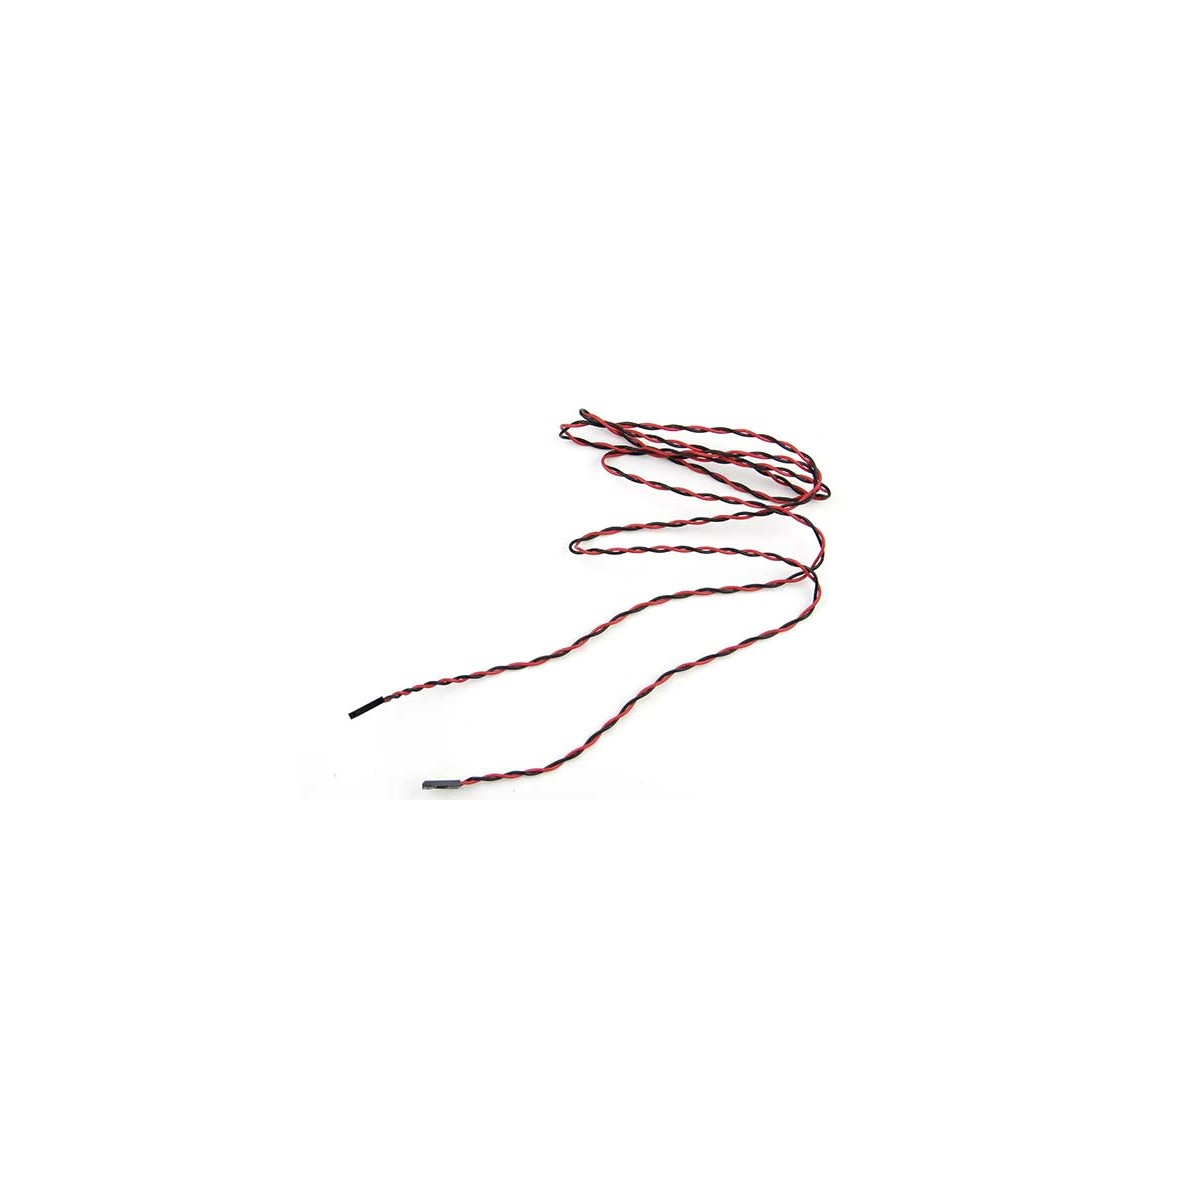 Supermicro CBL-CDAT-0528 - 1.22 m - 2-pin/2-pin - Female/Female - Black,Red - 1 pc(s)